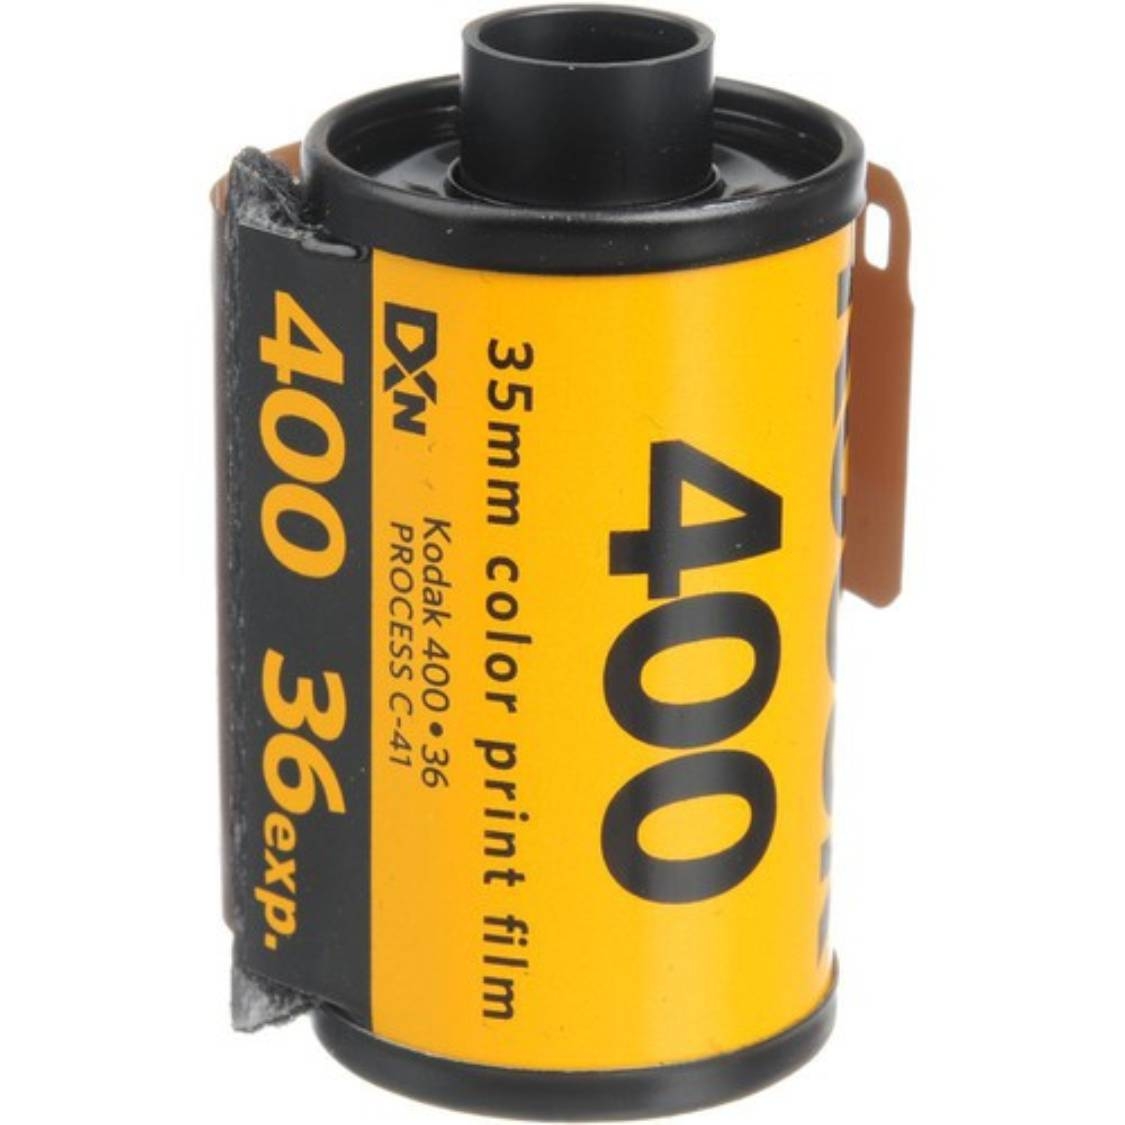 Kodak UltraMax 400 Color Negative Film (35mm Roll Film, 36